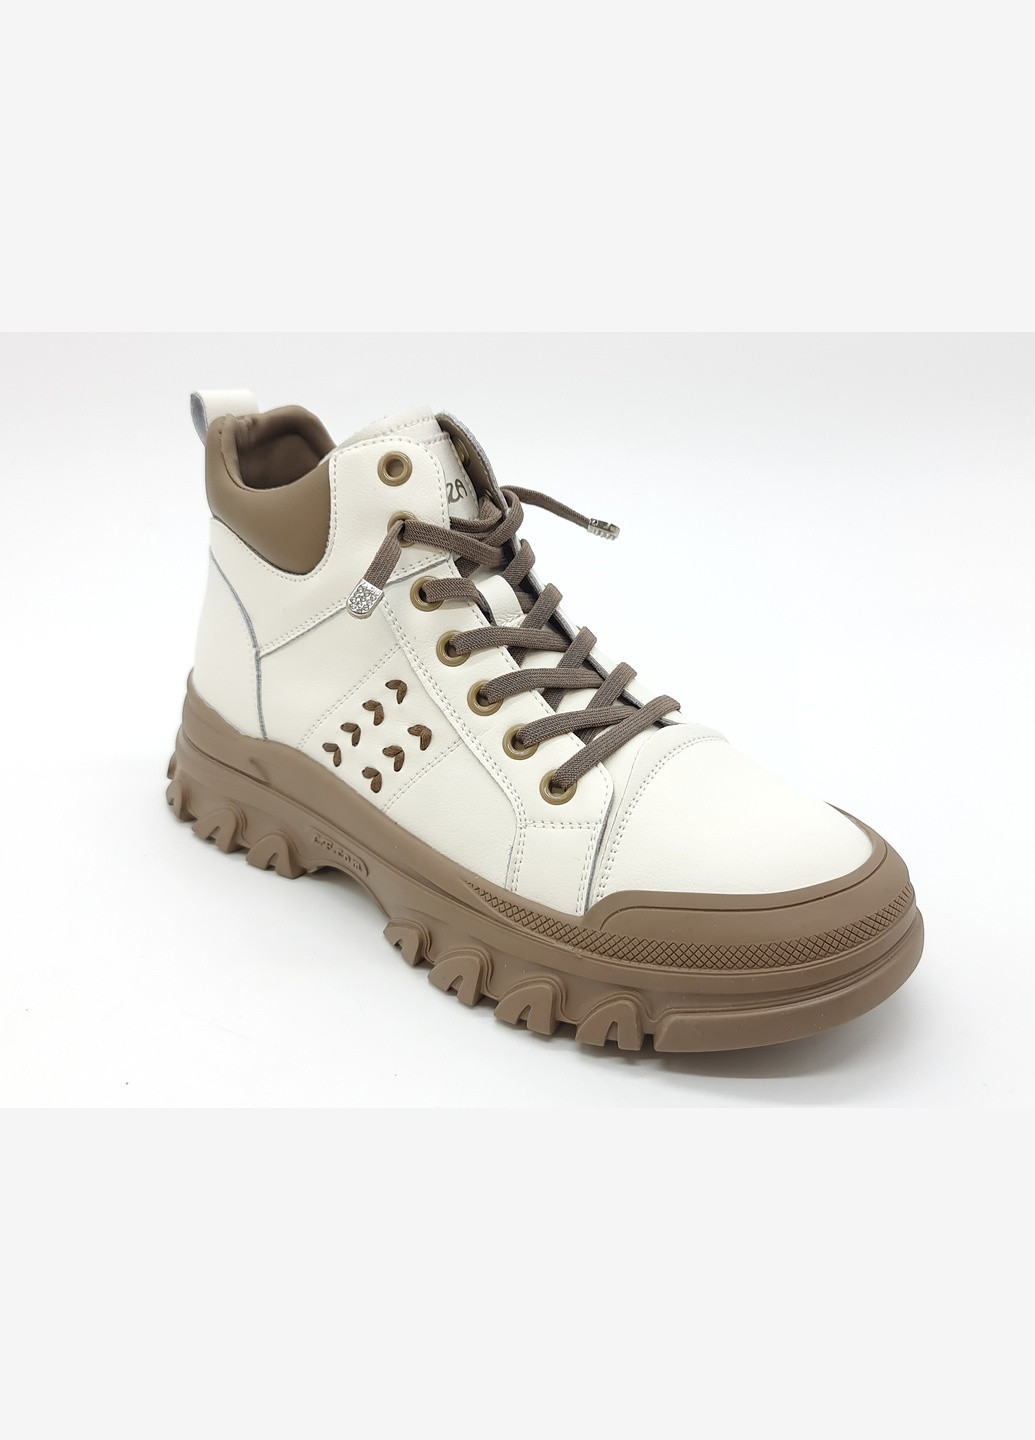 Осенние женские ботинки белые кожаные l-10-6 23 см (р) Lonza